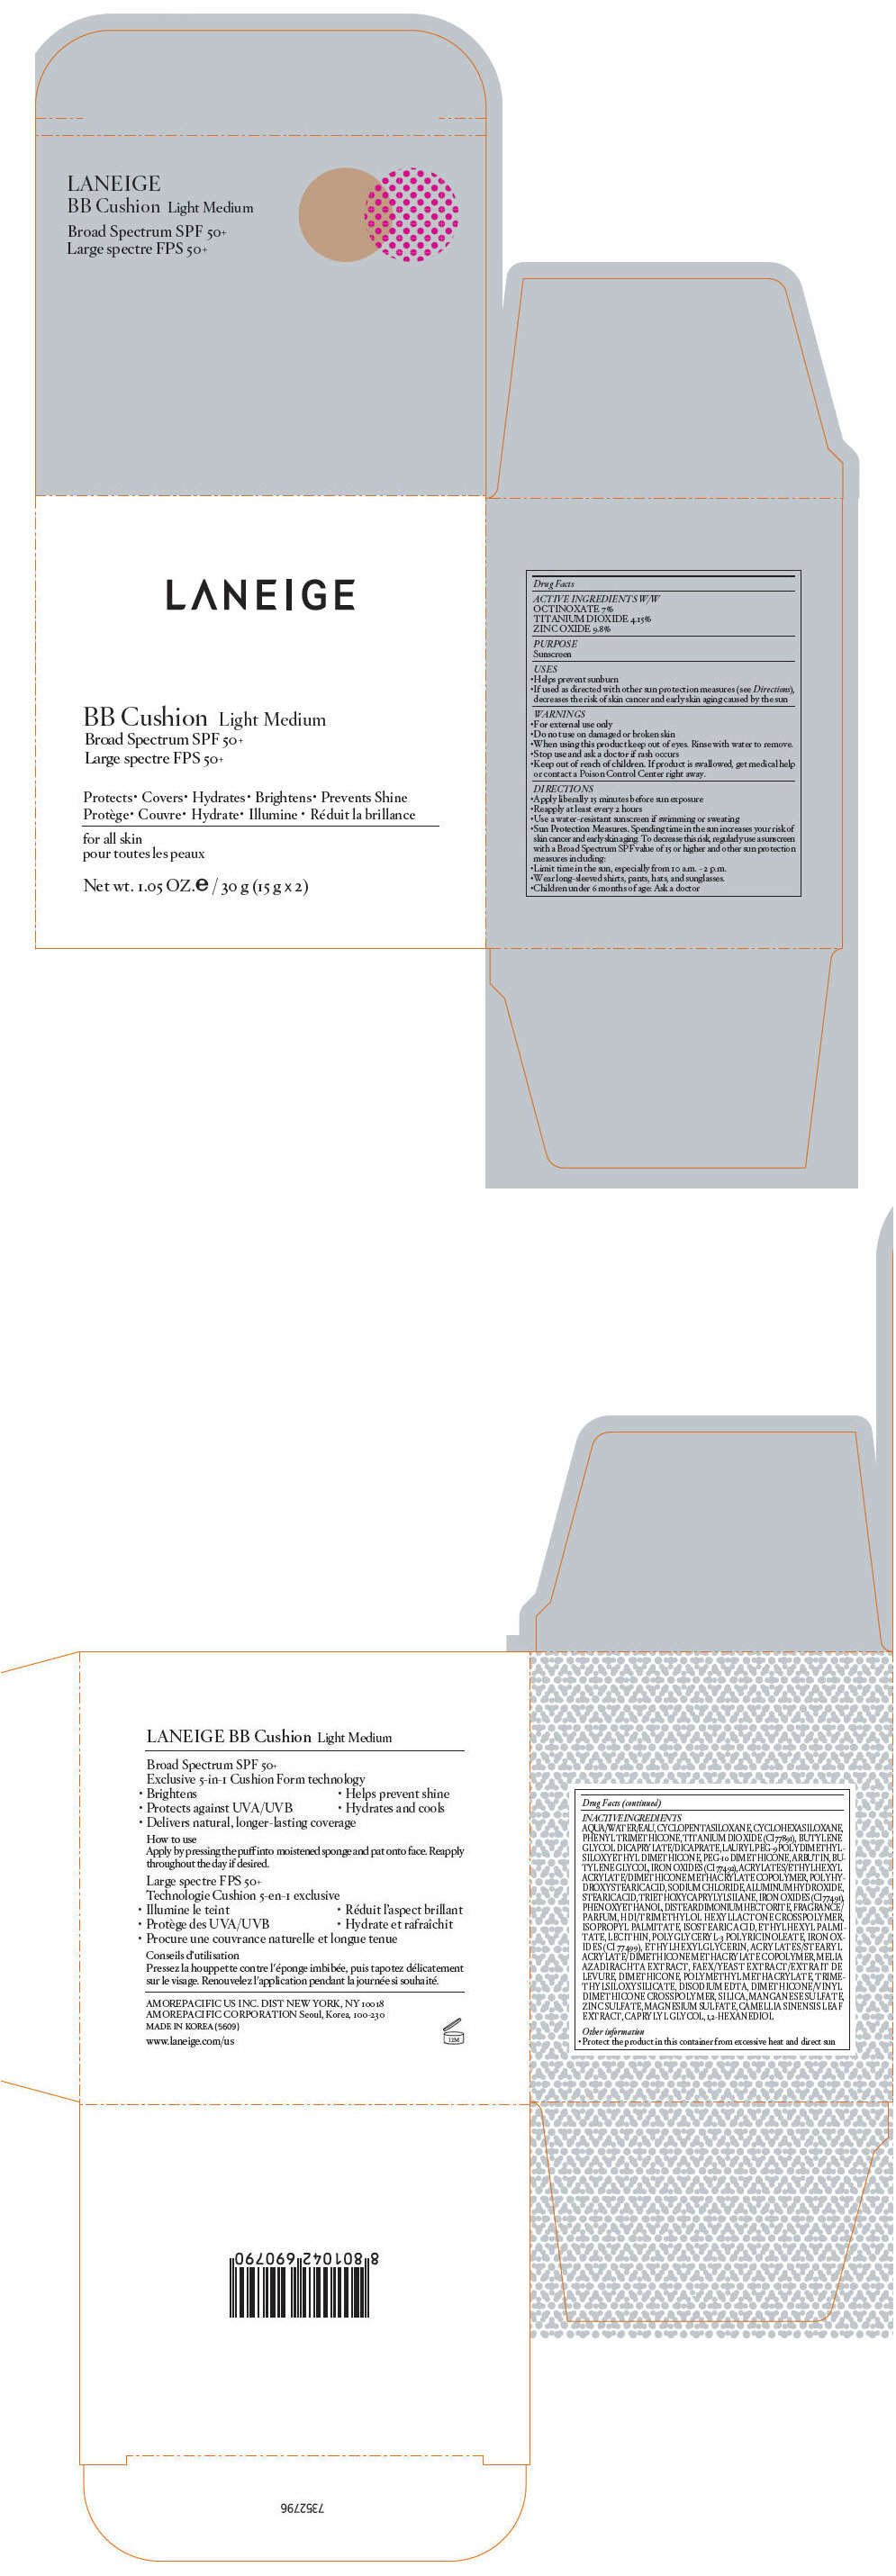 PRINCIPAL DISPLAY PANEL - 15 g x 2 Container Carton - Light Medium